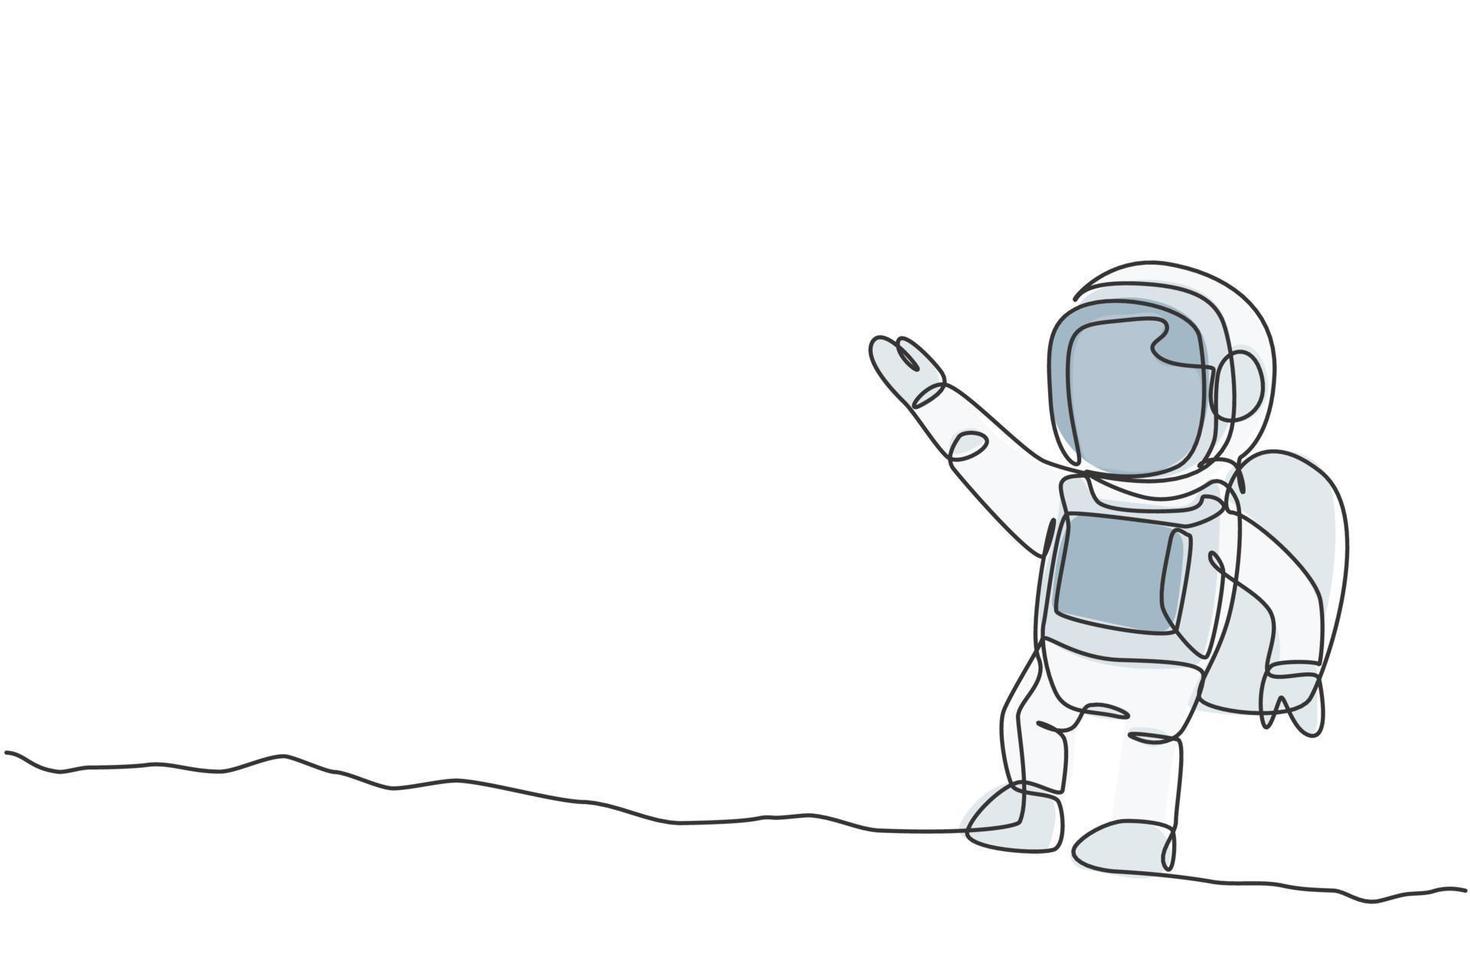 un dibujo de línea continua de un joven científico astronauta que explora el espacio exterior en estilo retro. concepto de descubrimiento del cosmos del astronauta. Ilustración de vector de diseño de dibujo gráfico de línea única dinámica